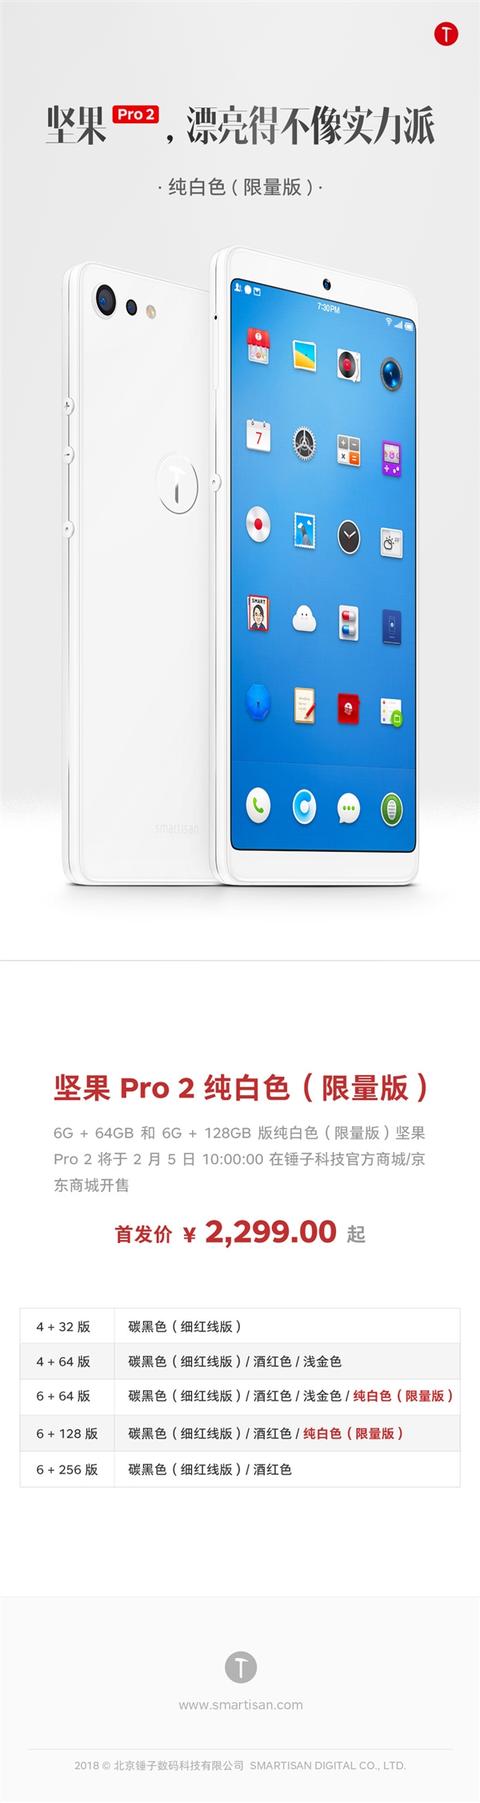 坚果Pro 2纯白色发布：2299元起